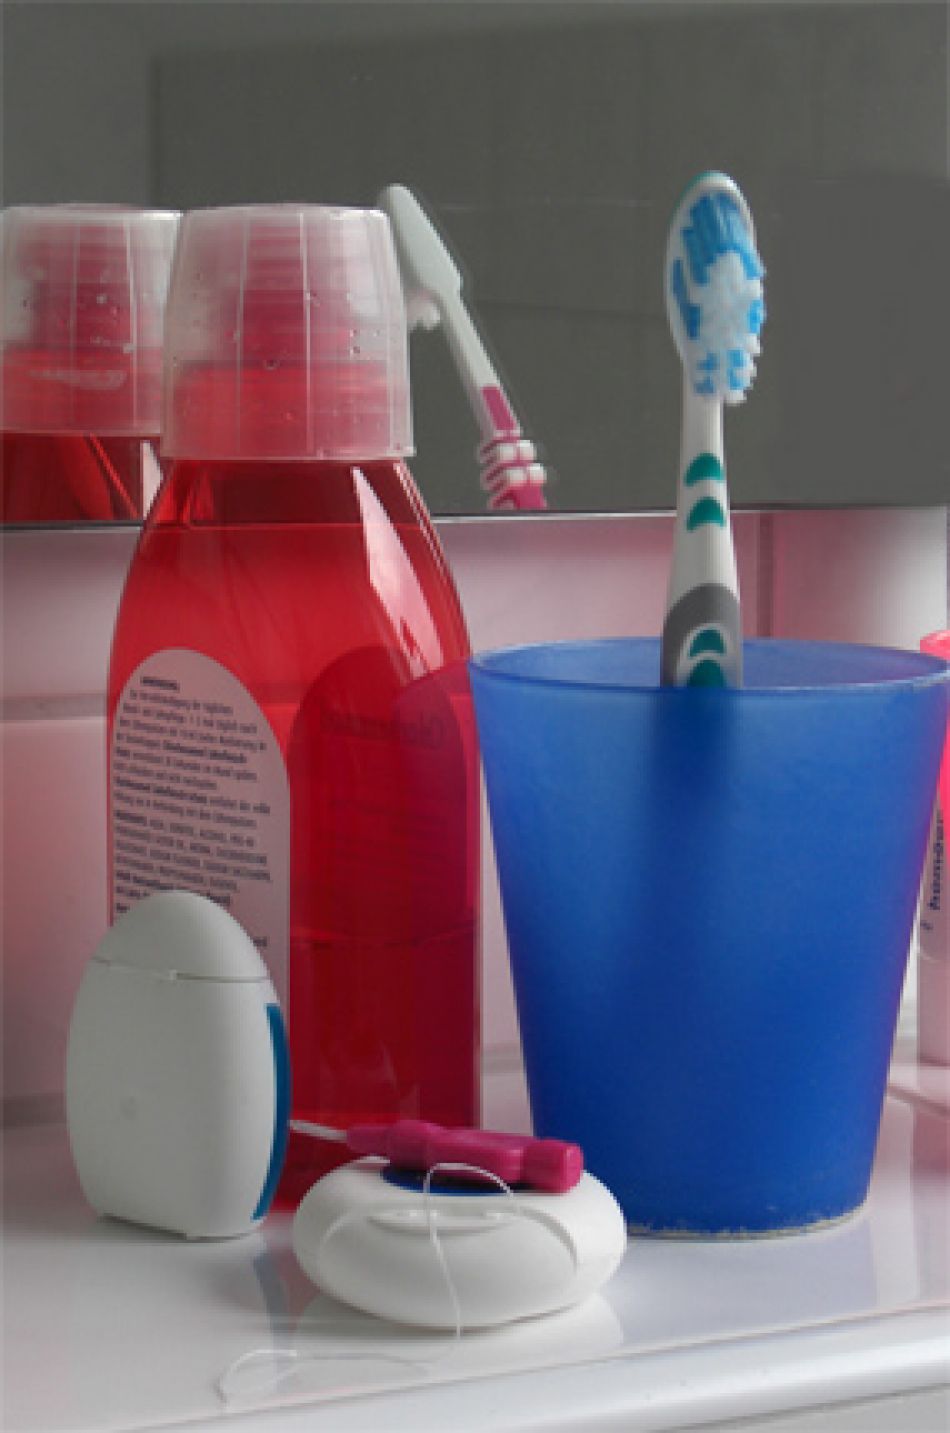 Zahnpflege mit Bürste, Zahncreme, Zahnseide, aber nicht mit Mundwasser, © Krebsinformationsdienst, Deustches Krebsforschungszentrum